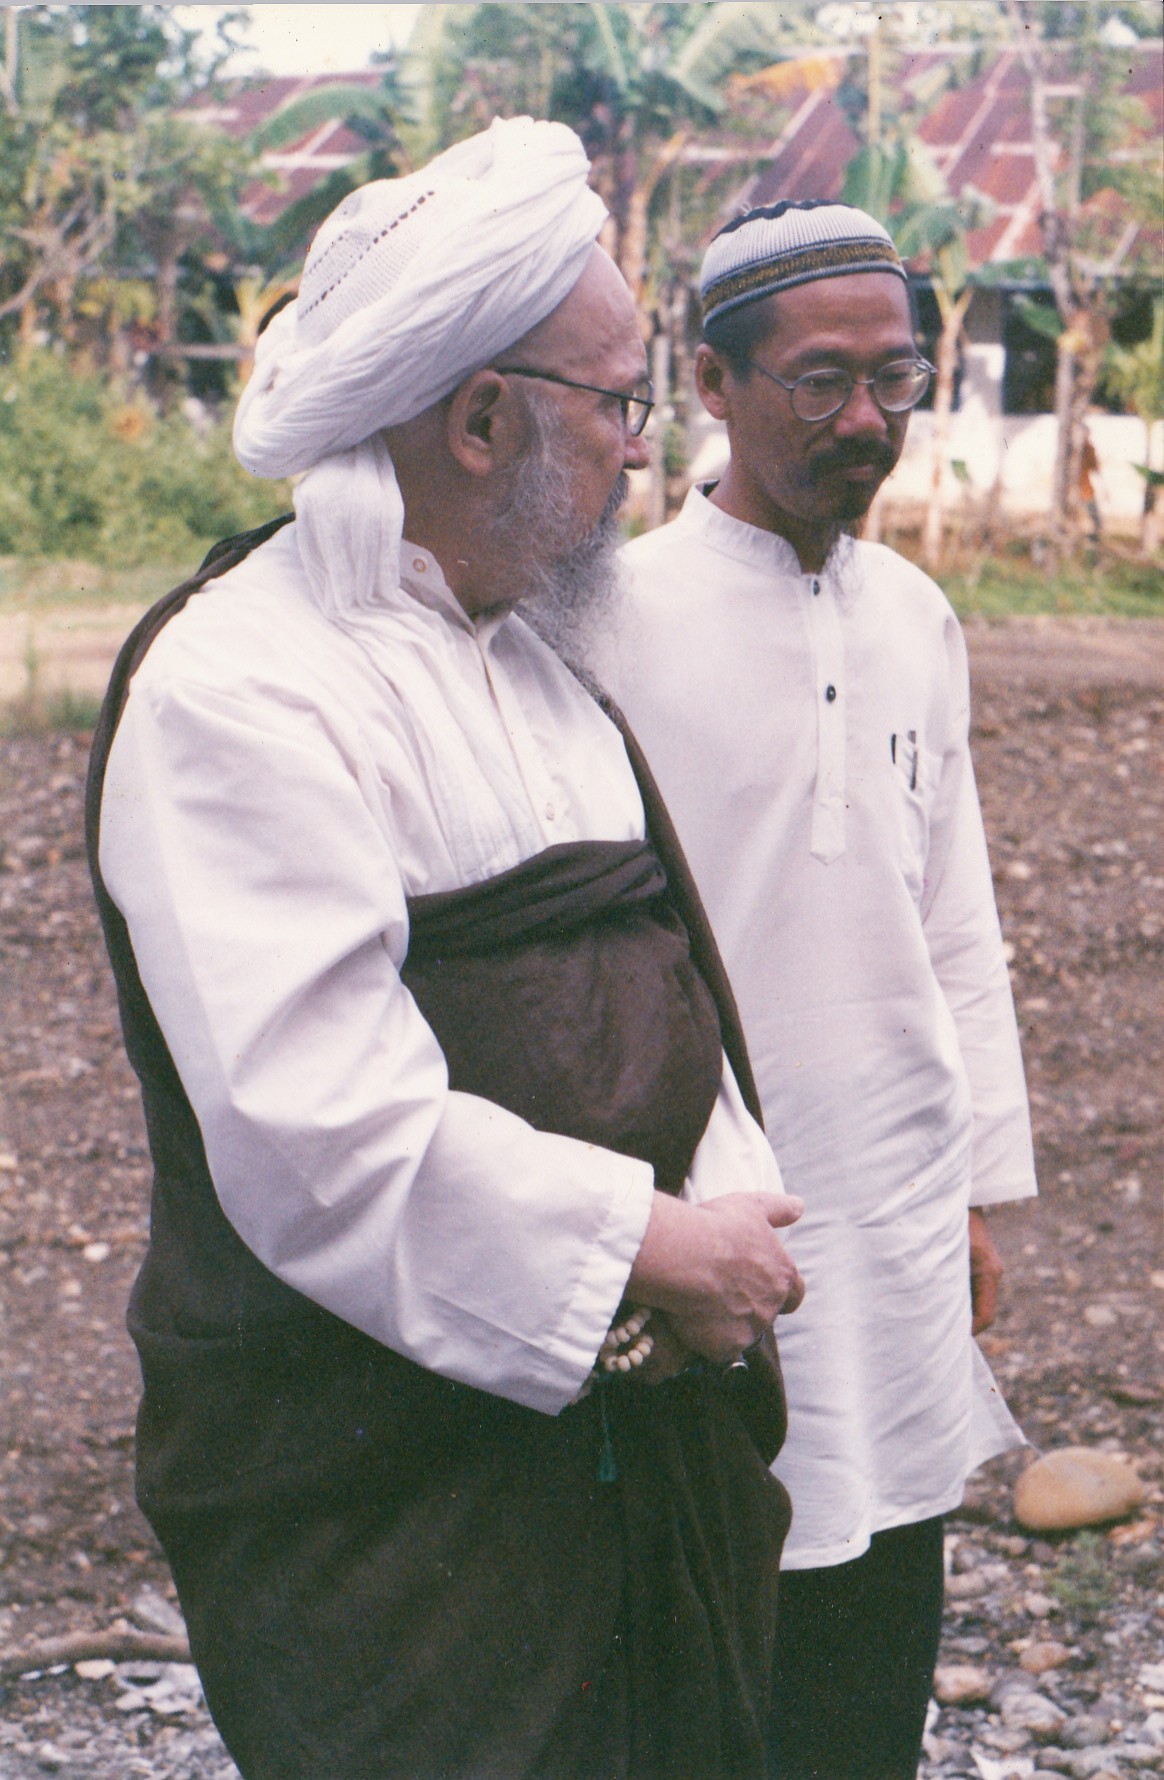 Syaikh Husain Bersama Syaikh Fattah di Padang Lampe